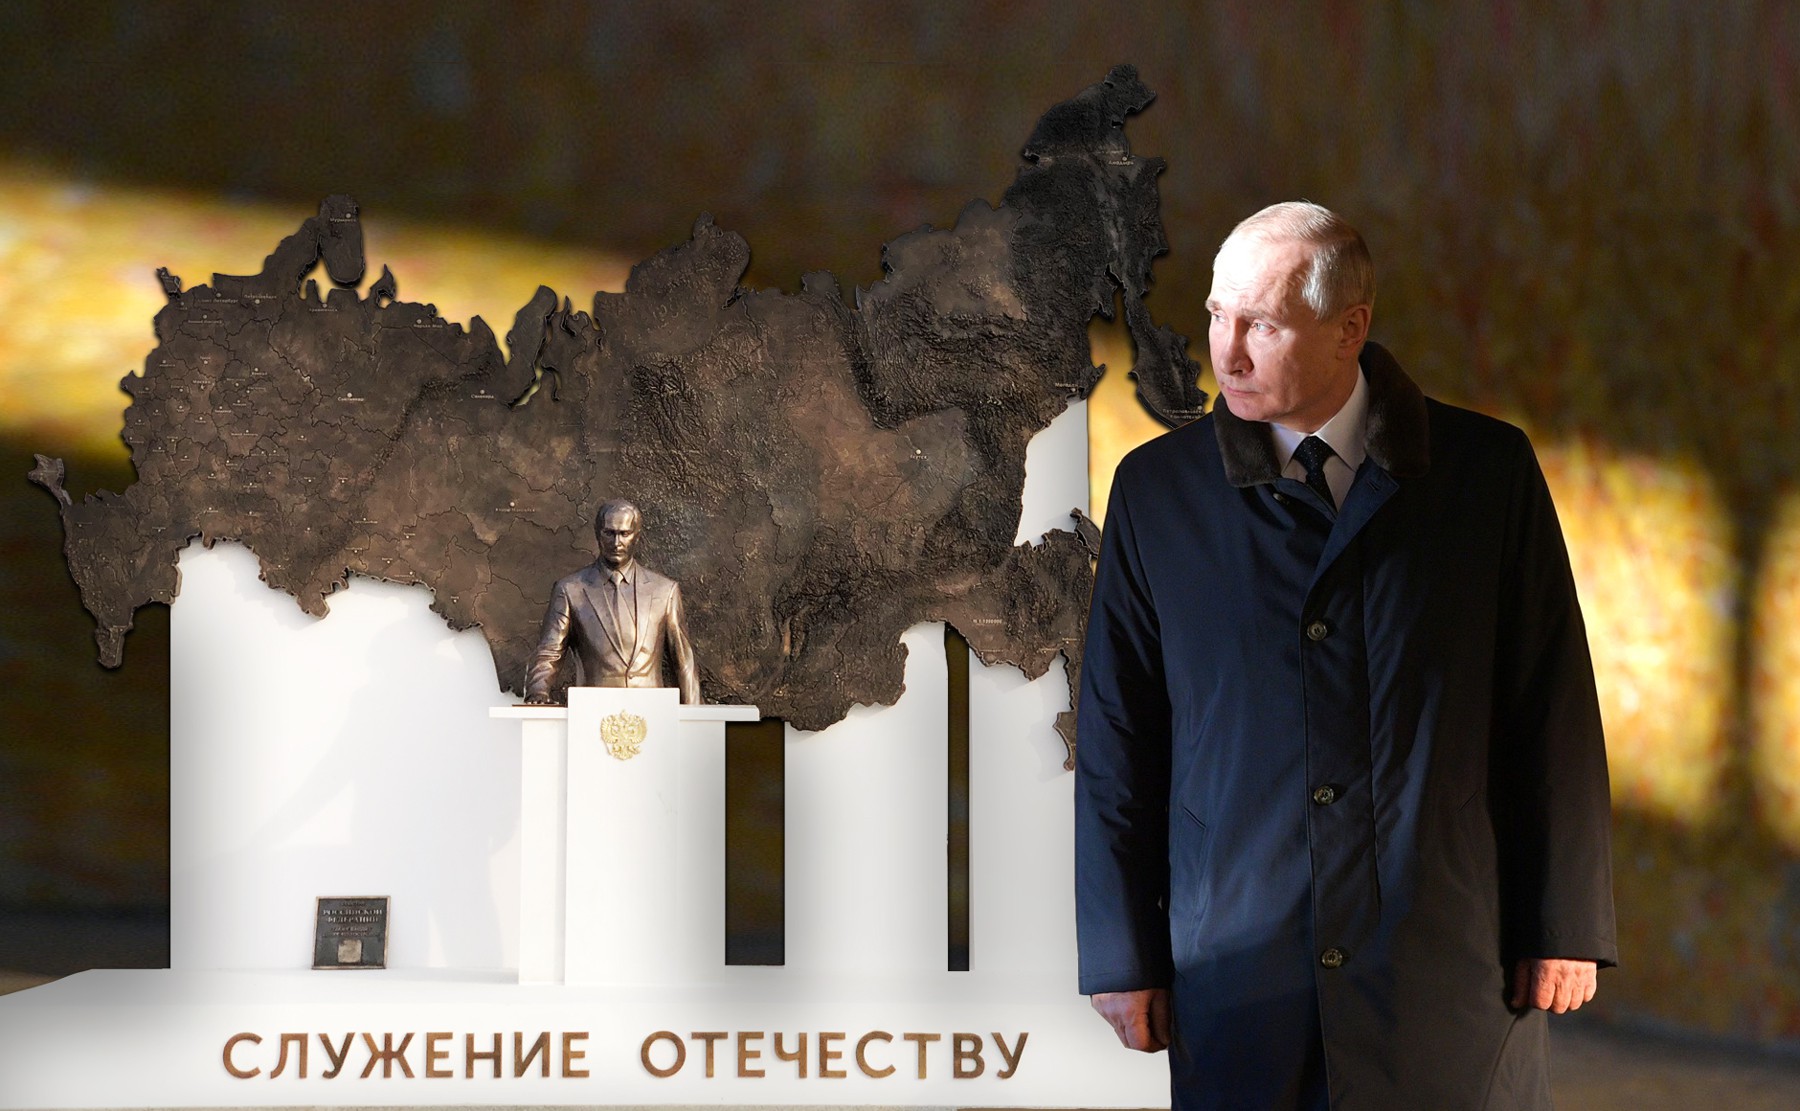 Dailystorm - А был ли Путин? В Кургане объяснили внезапное исчезновение скульптуры президента